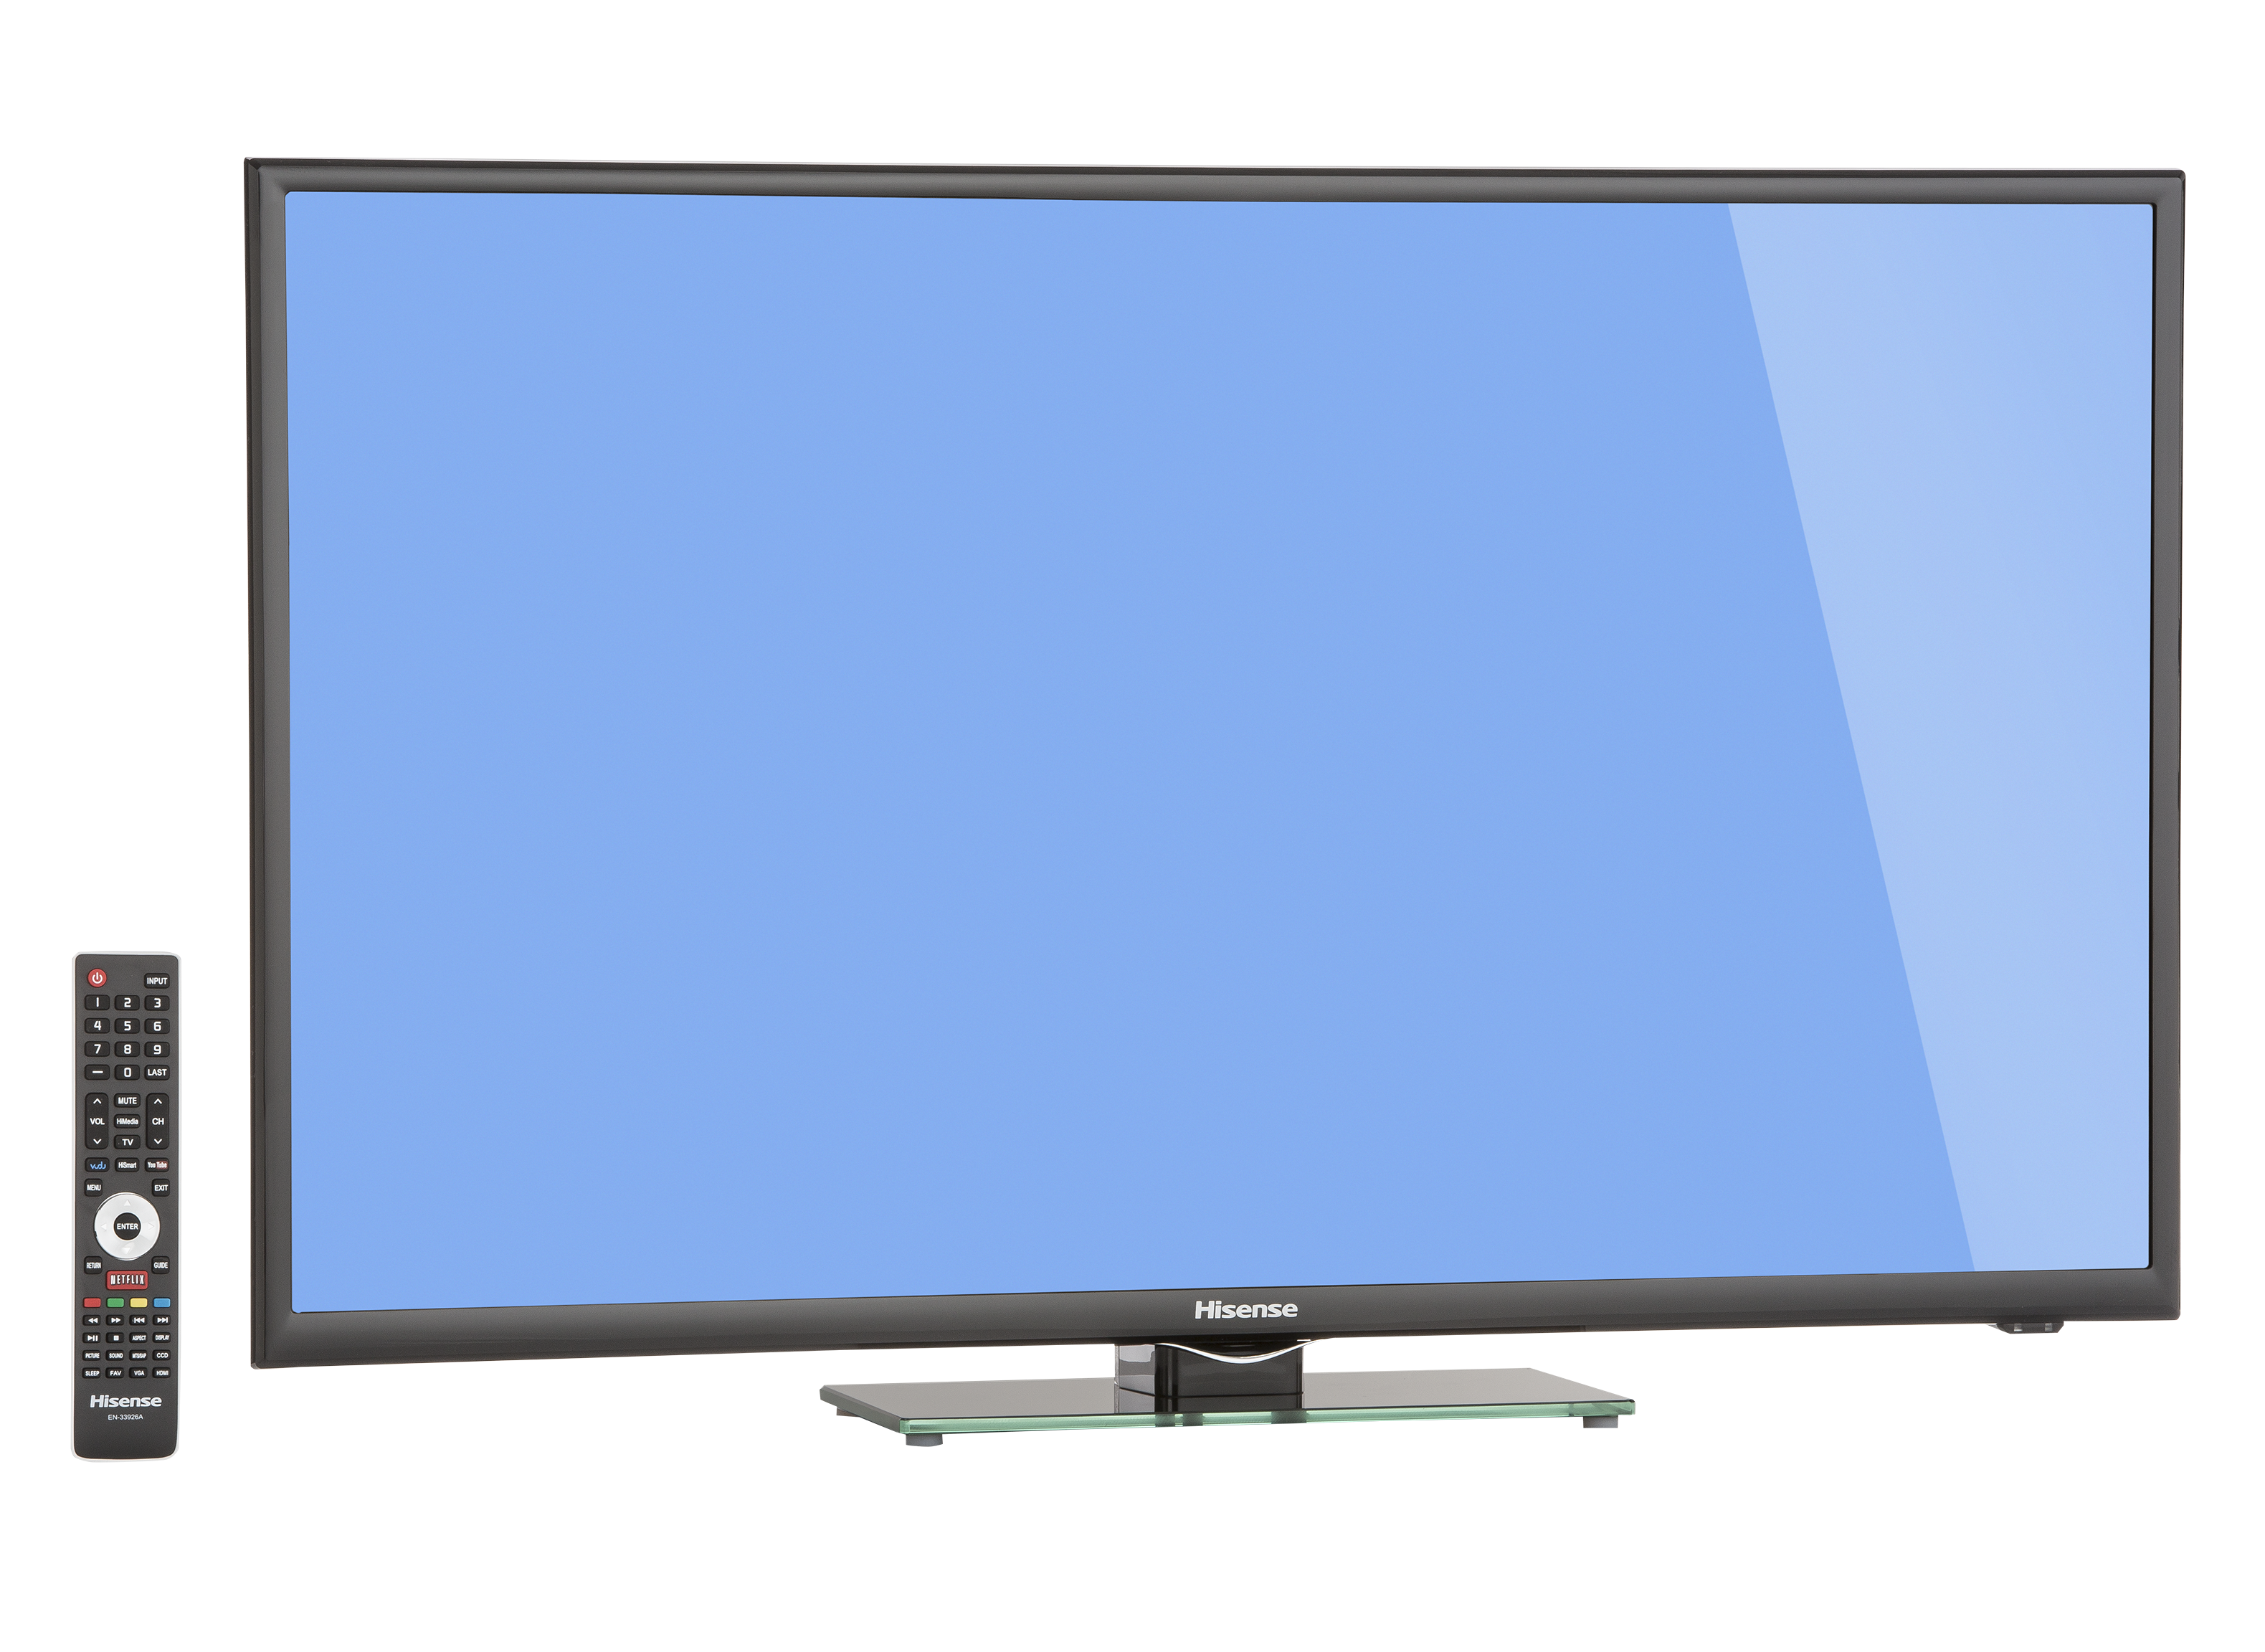 Smart TV 40H5G, 40